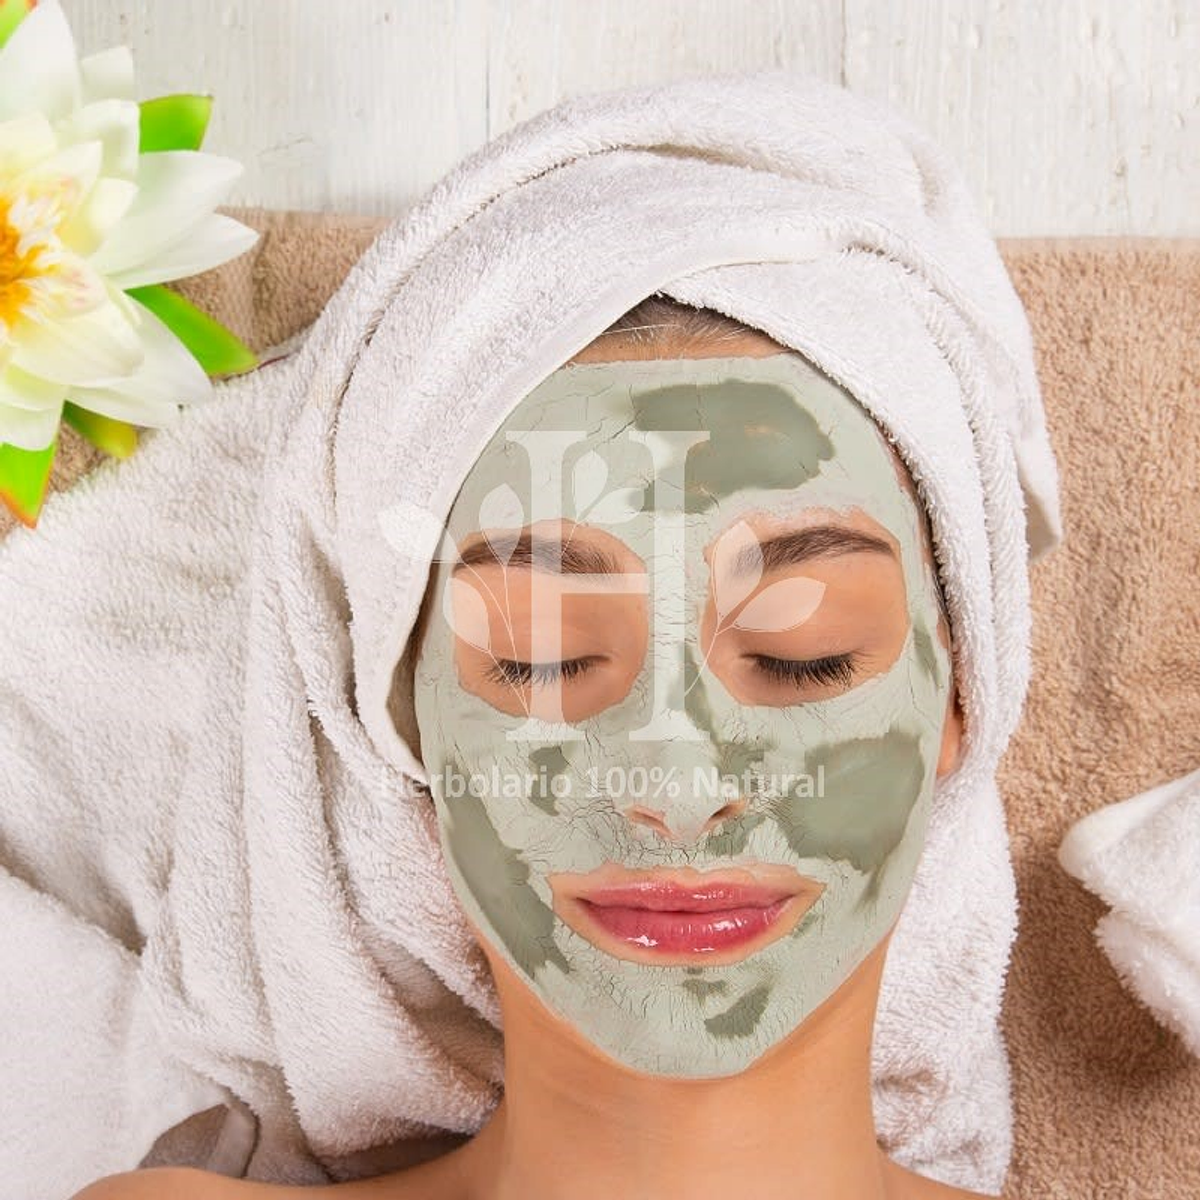 Green Clay for Facial Mask/Arcilla Verde Natural para Mascarillas o Masajes  1Klo